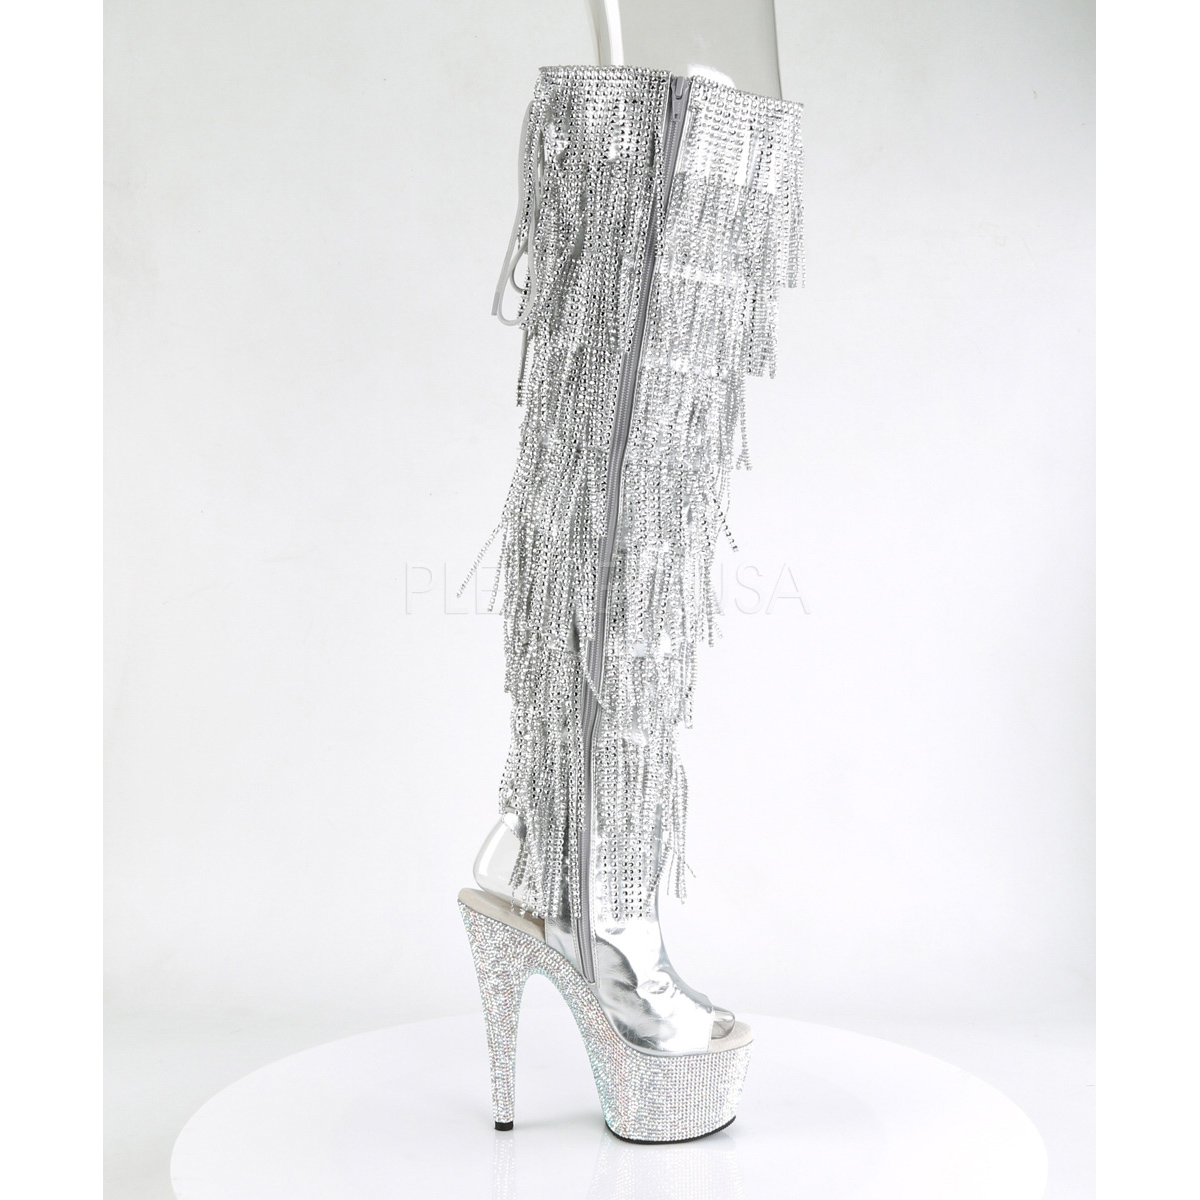 silver fringe heels